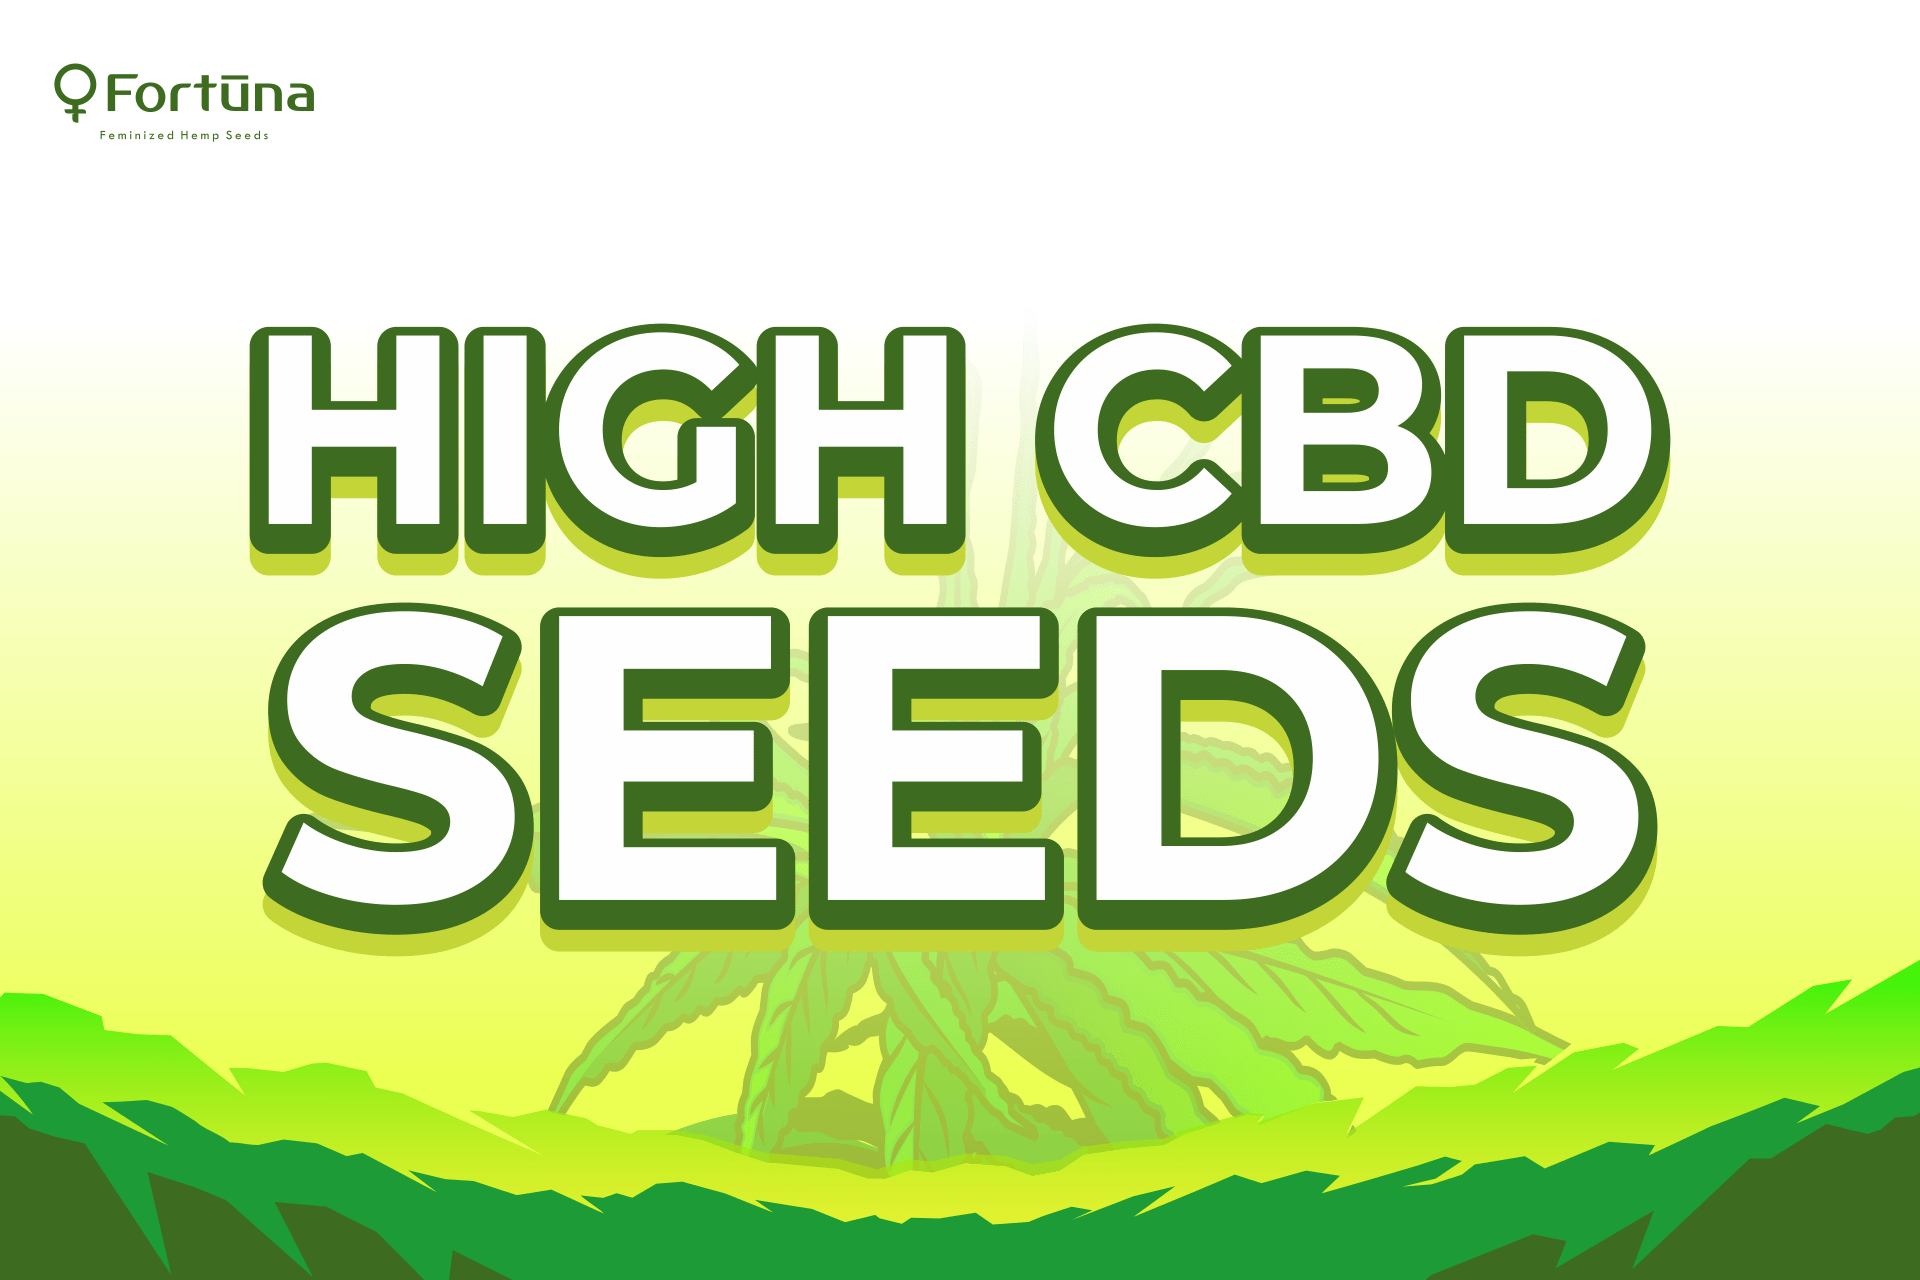 High CBD Hemp Seeds - Fortuna Hemp